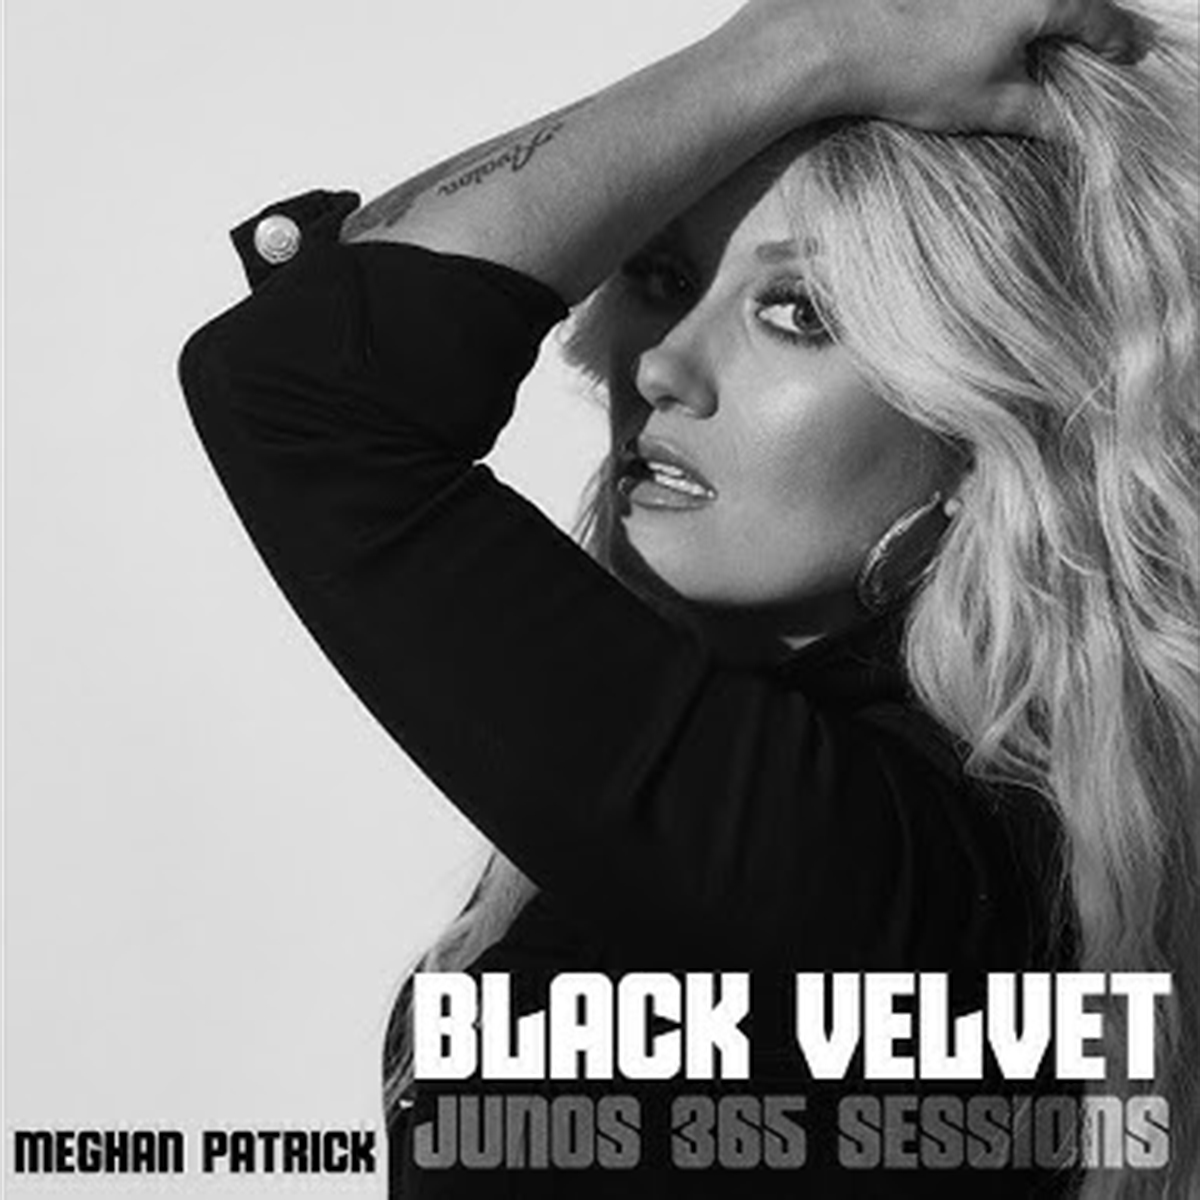 Meghan Patrick Releases Powerful Cover of “Black Velvet”